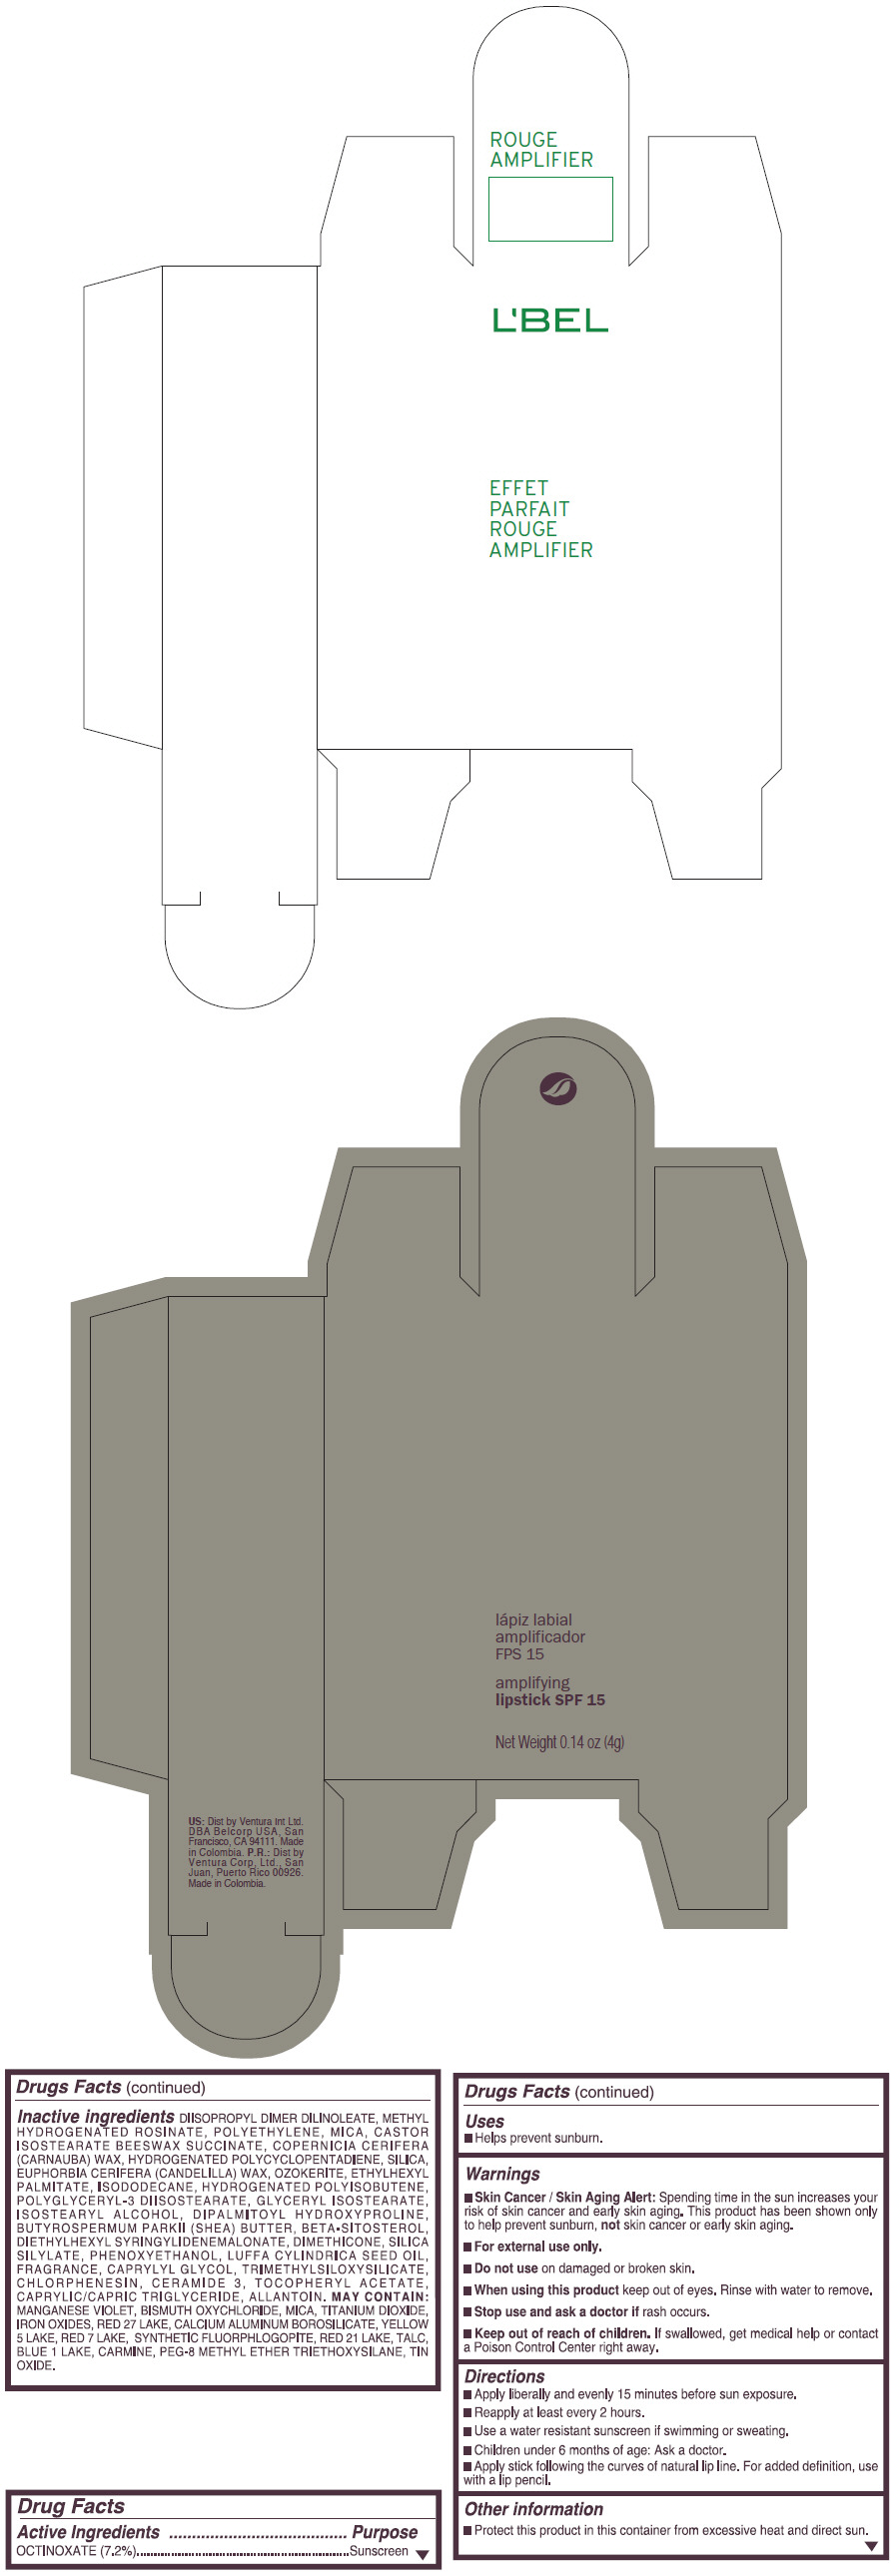 PRINCIPAL DISPLAY PANEL - 4 g Tube Box - (MALBEC) - BROWN